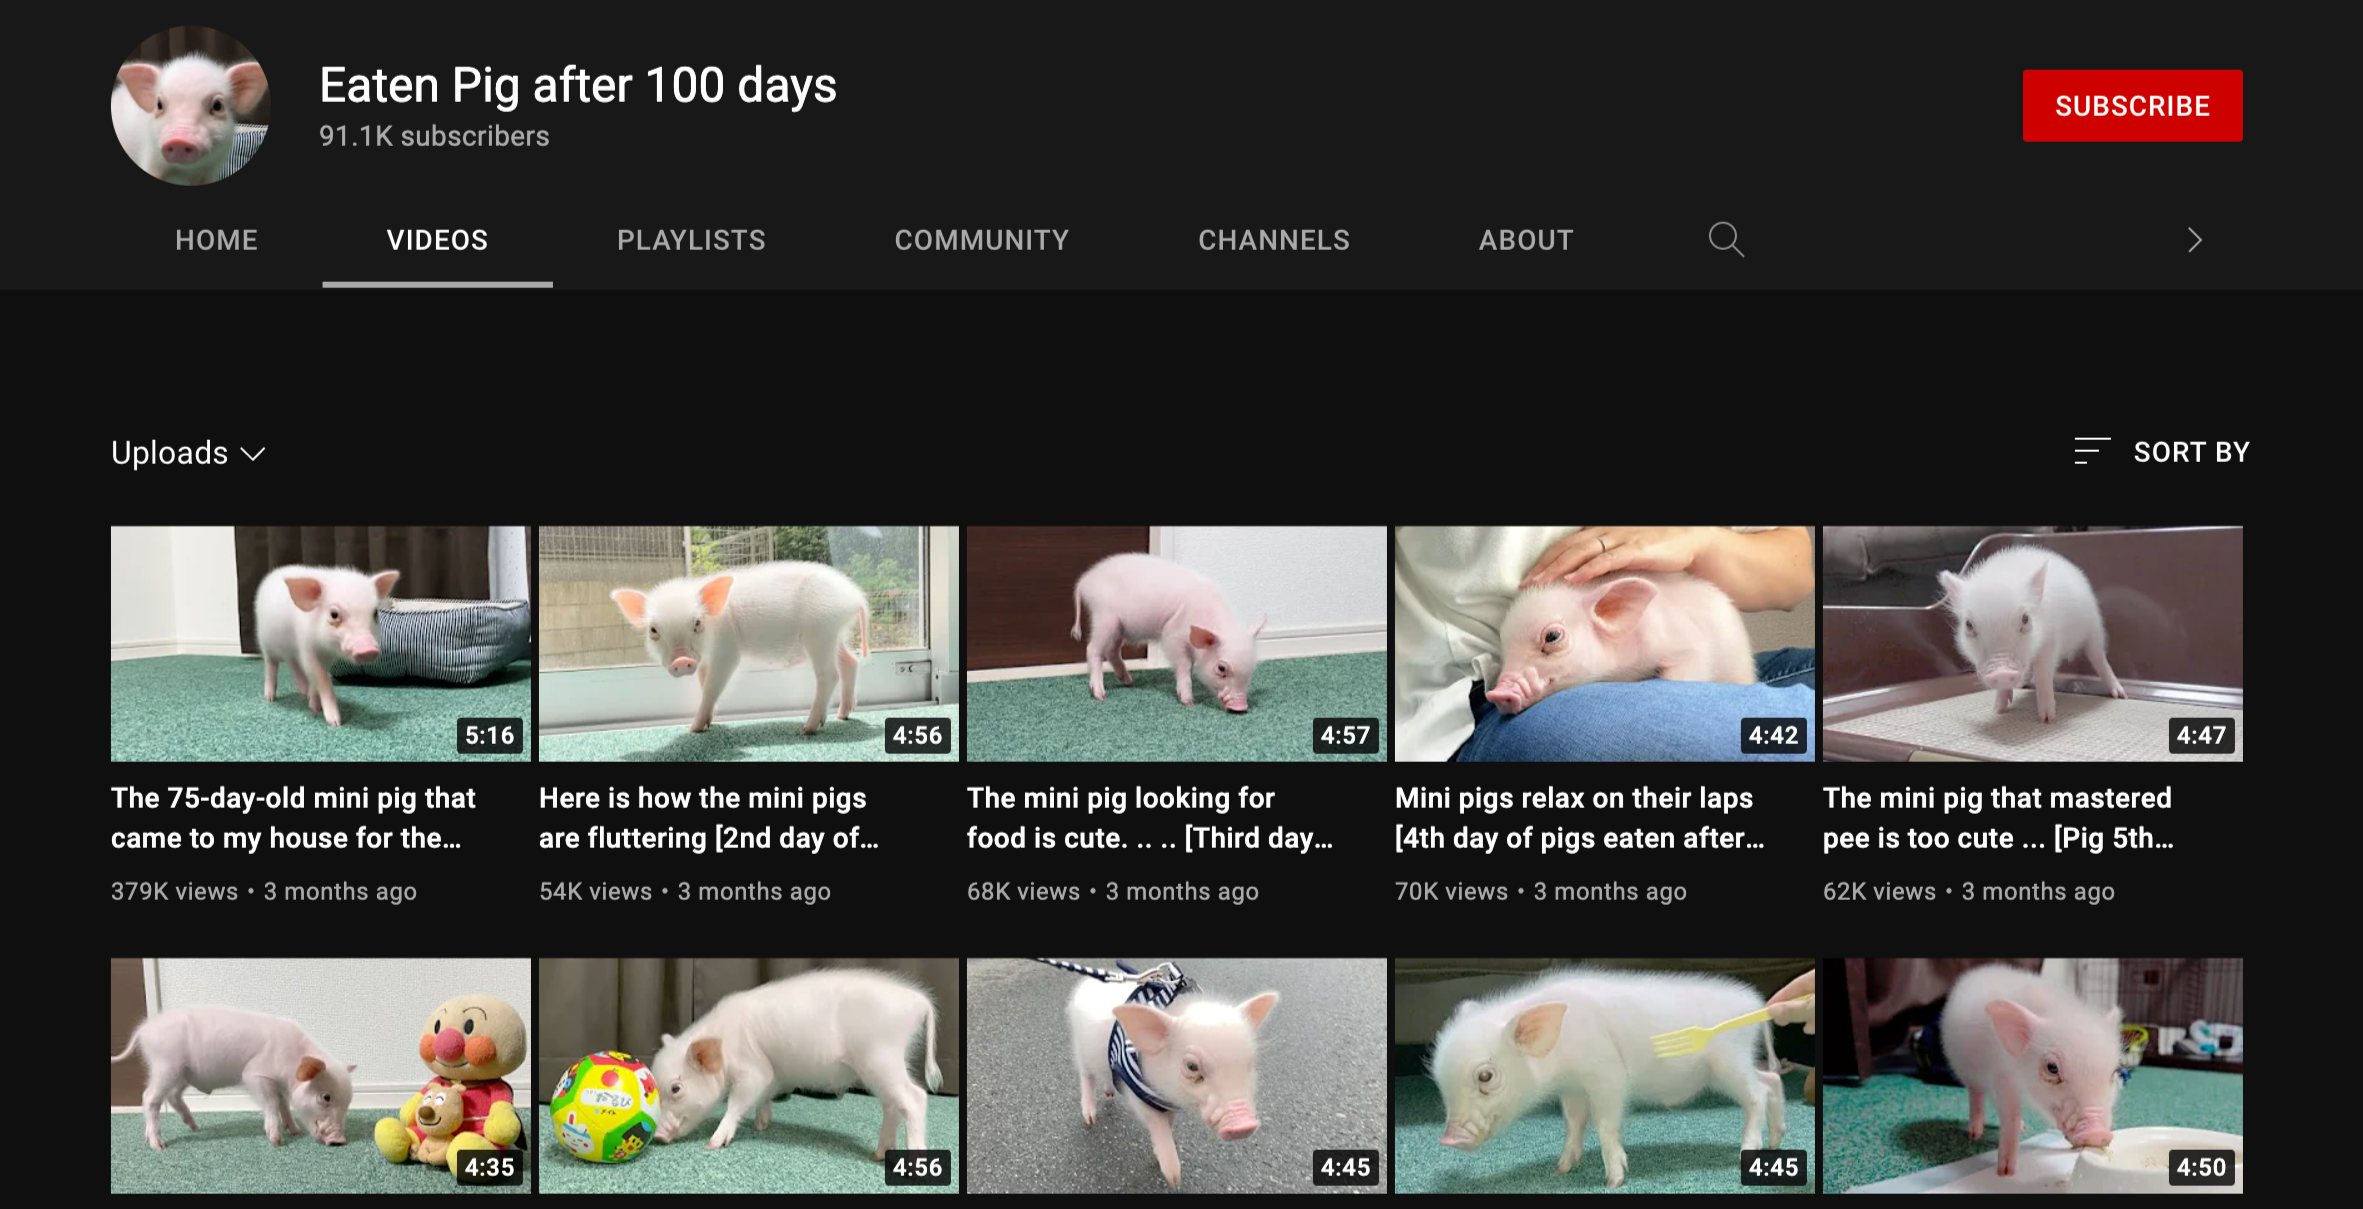 主人開 YouTube Channel 記錄養小豬點滴 夠 100 日便煮了它